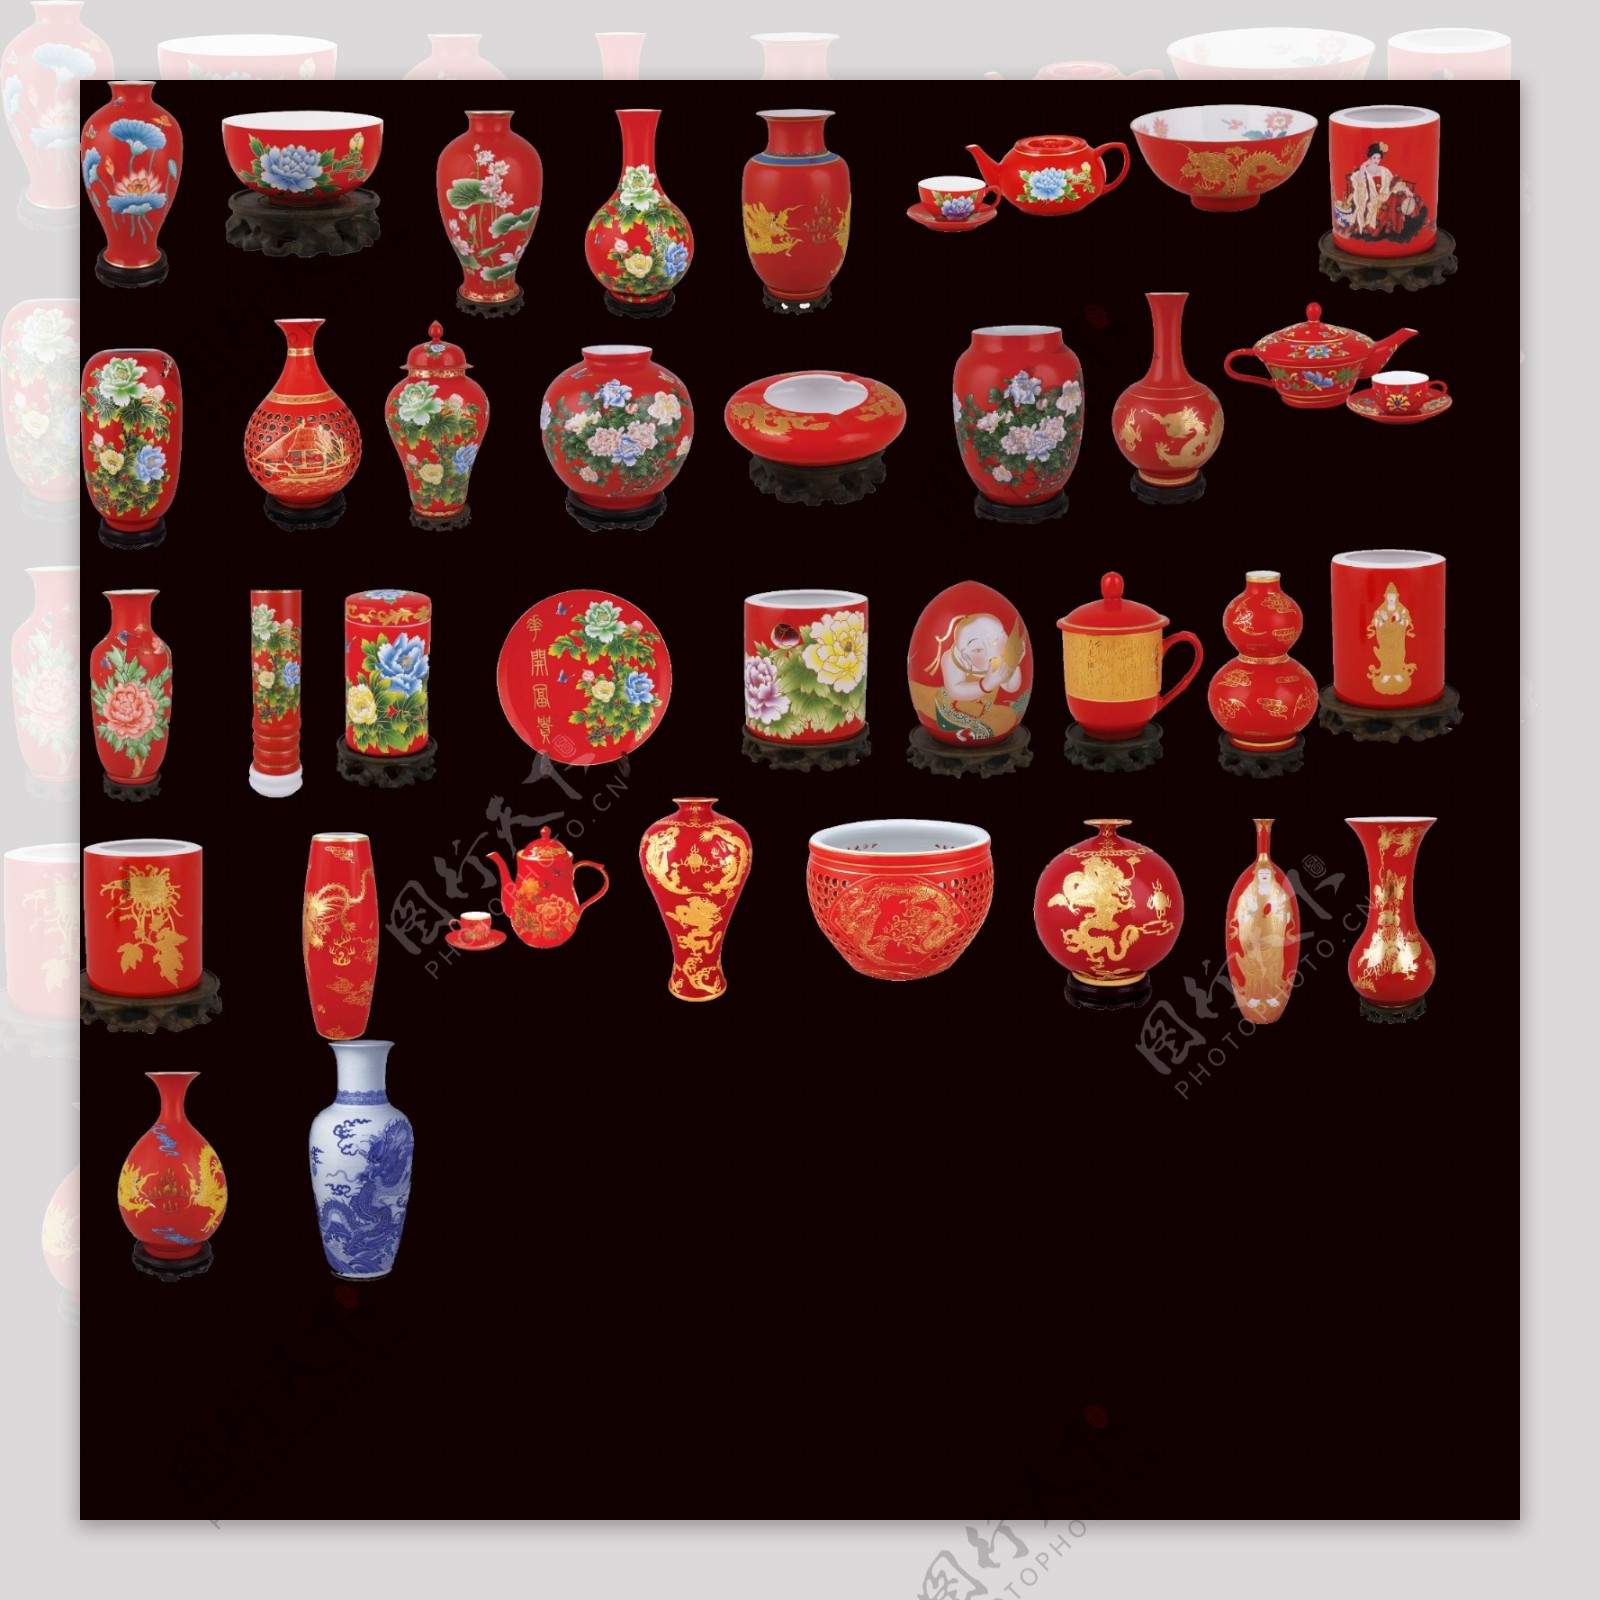 值得一看的漂亮中国红瓷器抠图大集合高像素下载